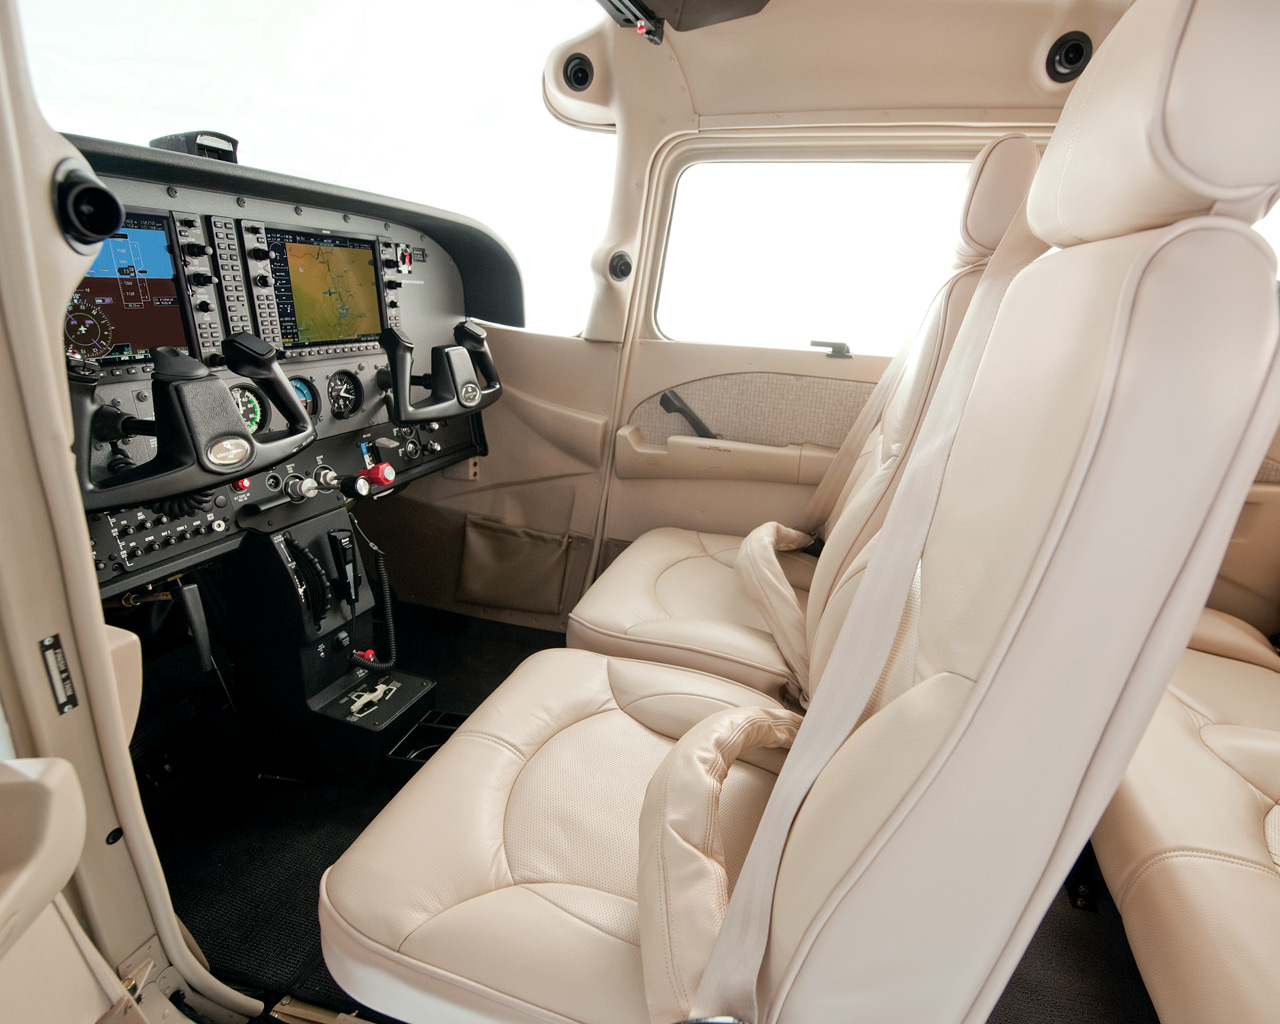 Kényelem az utasnak és a pilótának: bőr és LCD mindenhol <br>(fotó: Cessna)